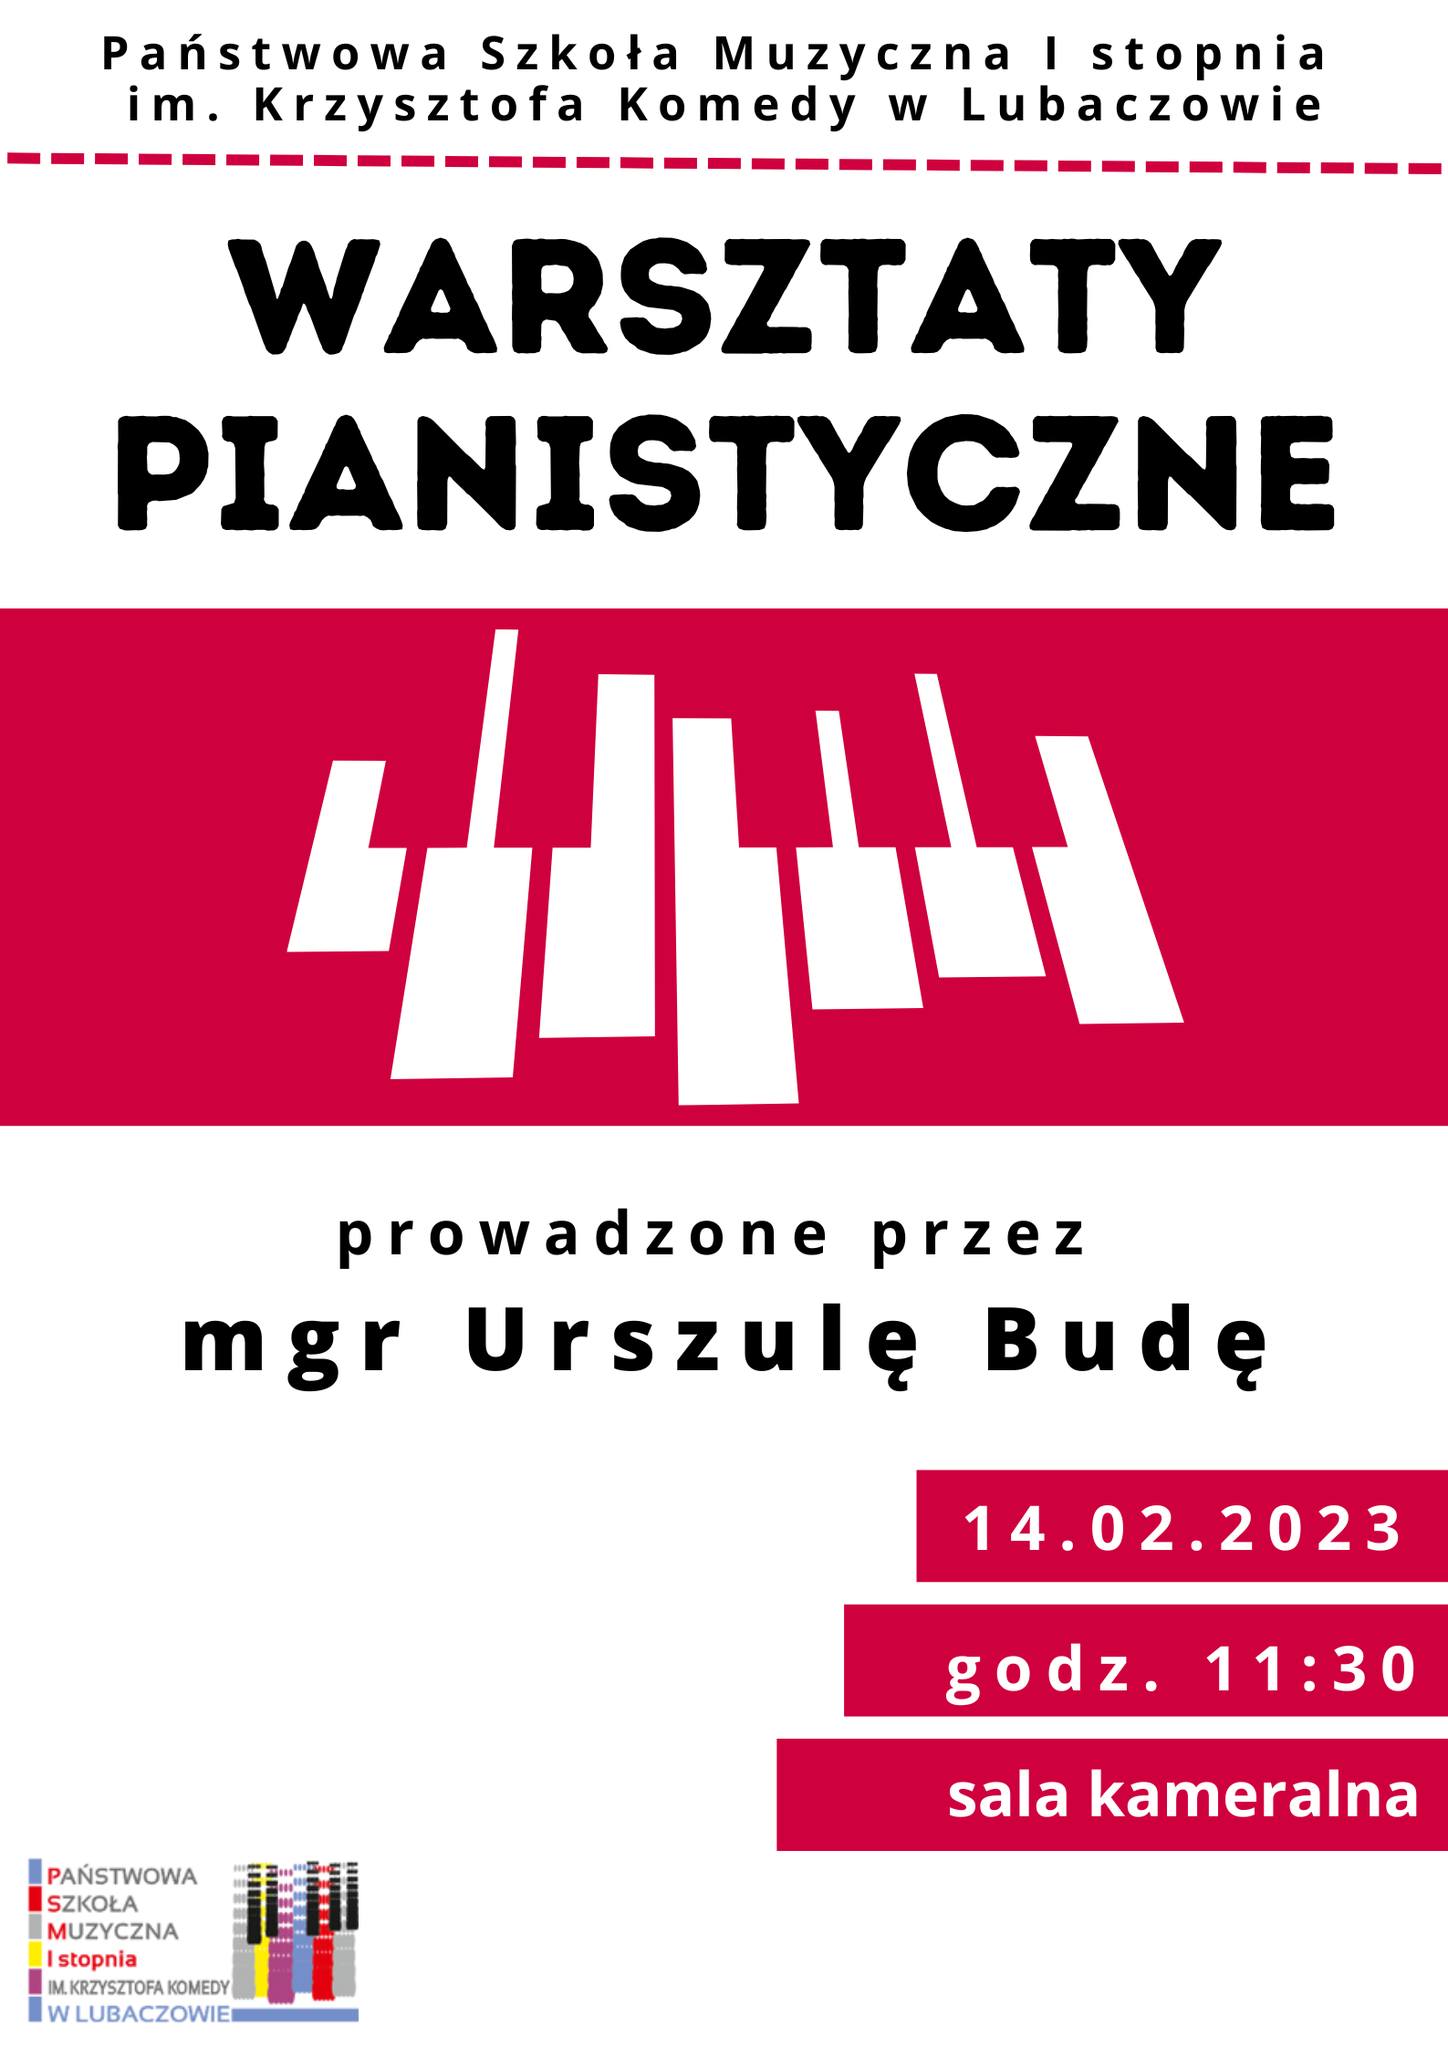 Plakat warsztatów pianistycznych na białym tle z elementem graficznym klawiatury fortepianu na środku, logo szkoły w lewym dolnym roku informacją tekstową o warsztatach.